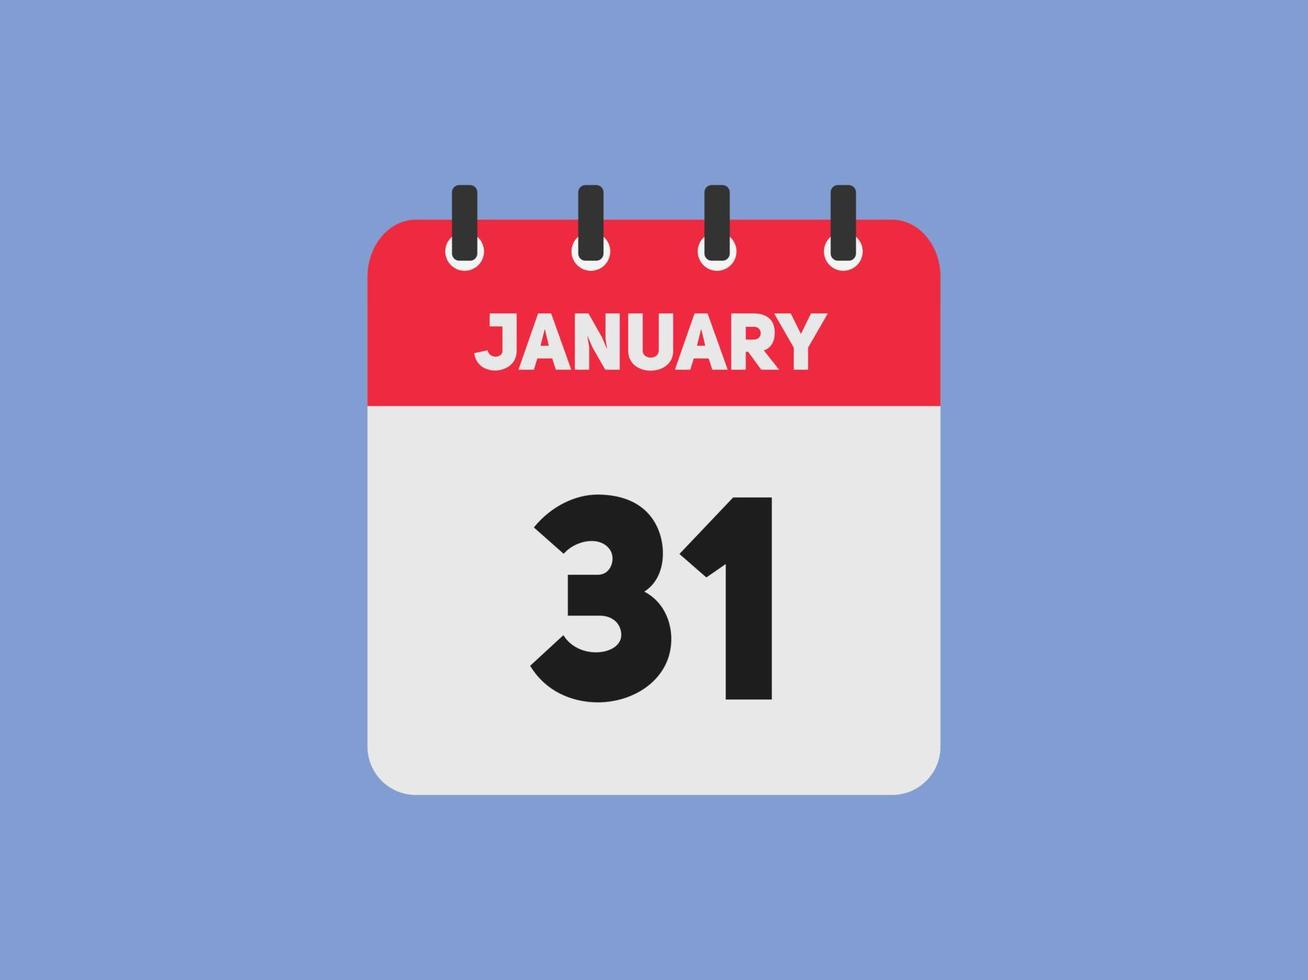 31. januar kalender erinnerung. 31. januar tägliche kalendersymbolvorlage. Kalender 31. Januar Icon-Design-Vorlage. Vektor-Illustration vektor